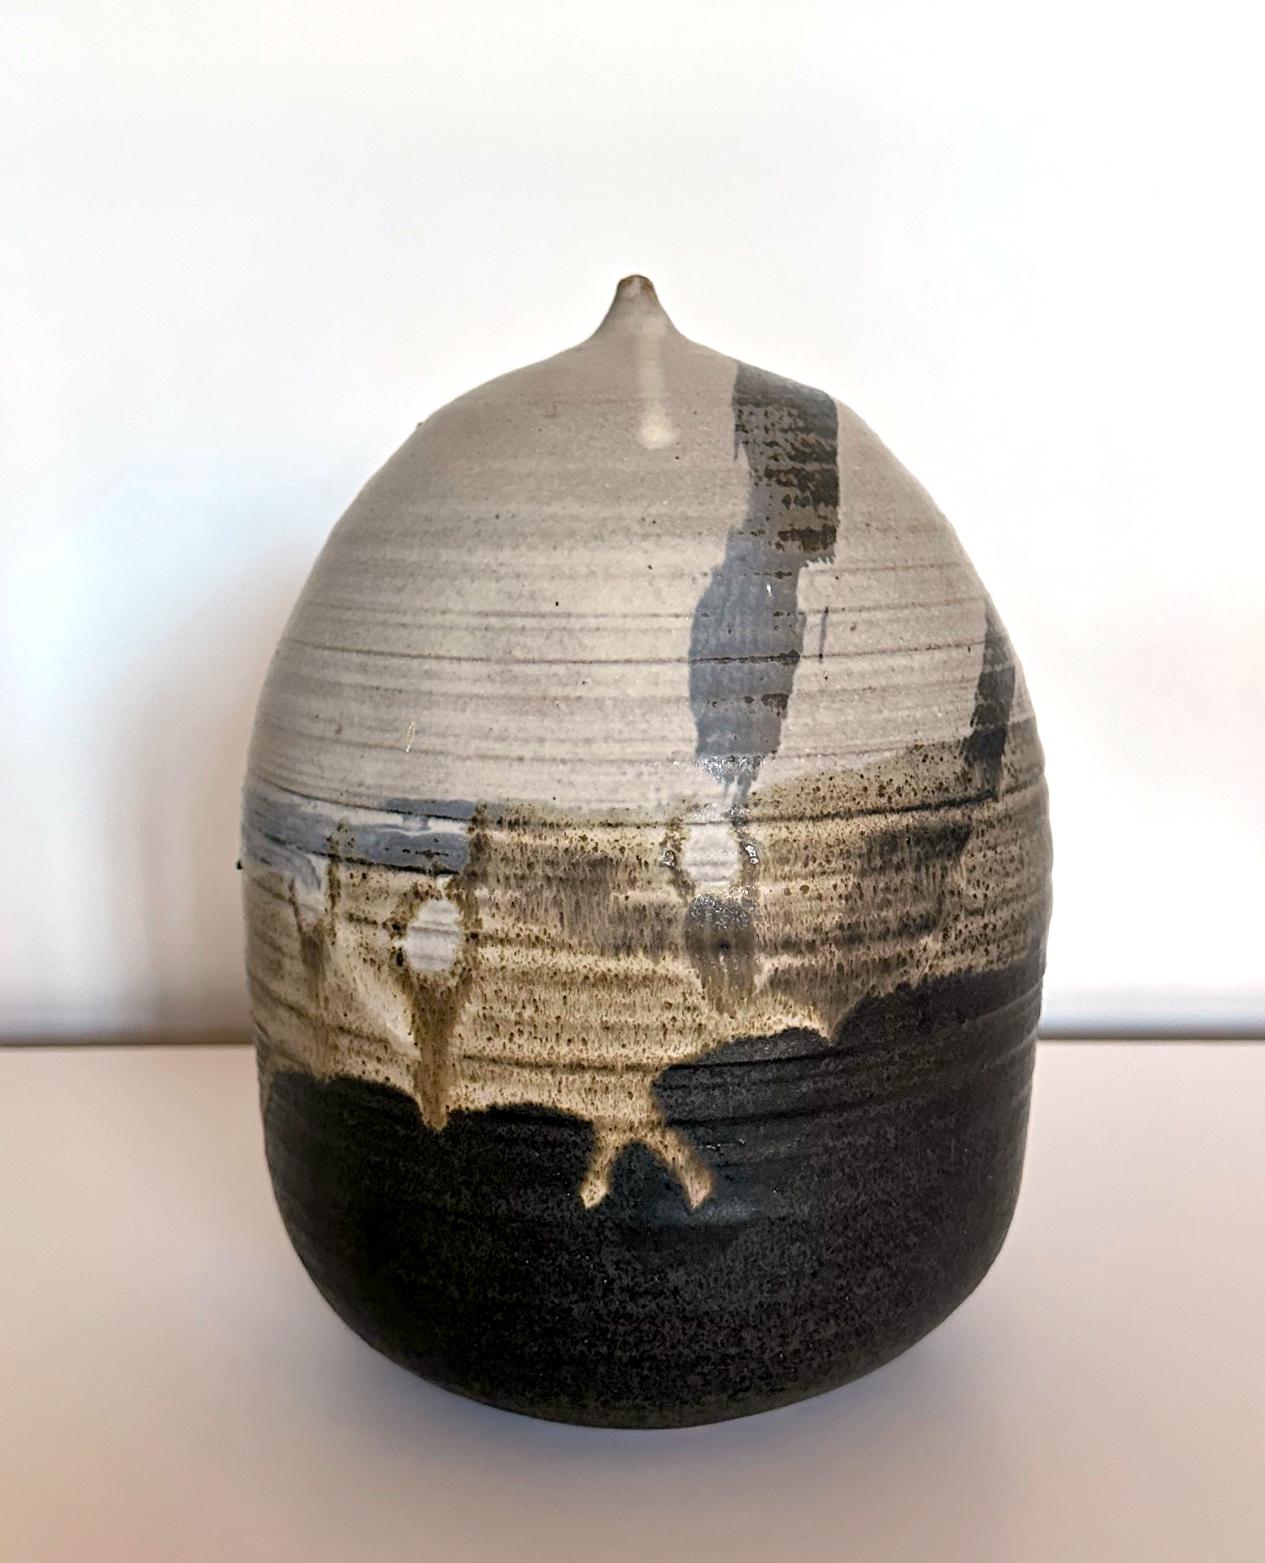 Un fantastique pot en céramique de forme fermée avec hochet de l'artiste américano-japonaise Toshiko Takaezu (américaine, 1922 - 2011). 
L'histoire : Dans les années 1980, la potière Lola RAE a invité Toshika dans son studio de céramique et son four